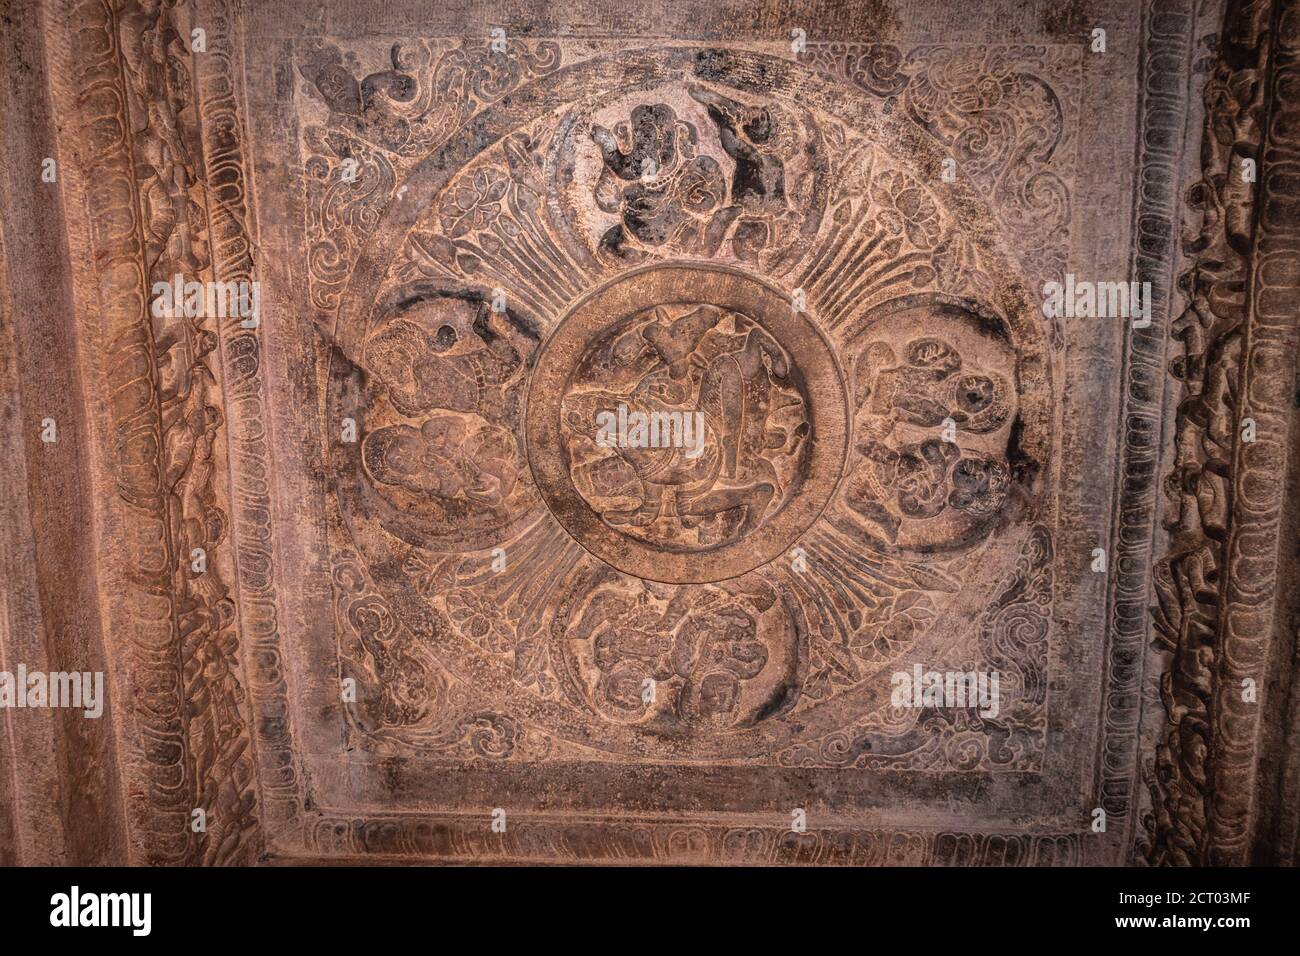 esculturas de la cueva de badami de dioses hindúes tallados en el tejado arte de piedra antigua en detalles la imagen se toma en badami karnataka india. es patrimonio de la unesco Foto de stock